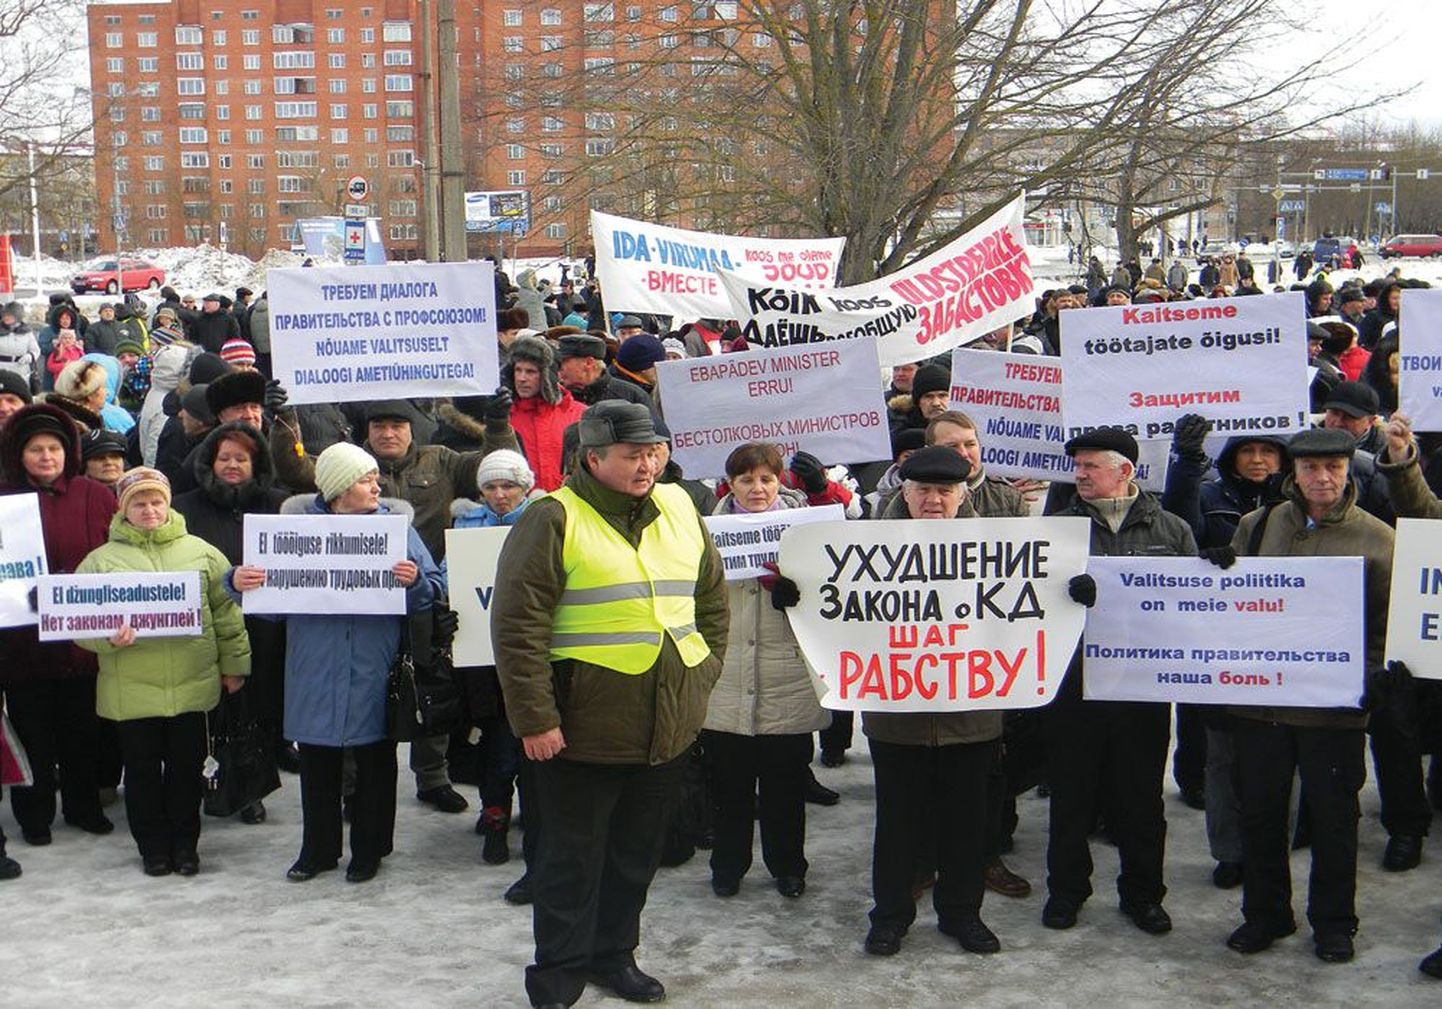 В марте этого года Центральный союз профсоюзов Эстонии инициировал по всей Эстонии митинги и забастовки. Эстонские энергетики и работники железной дороги теперь стремятся доказать свое право на забастовку в суде.